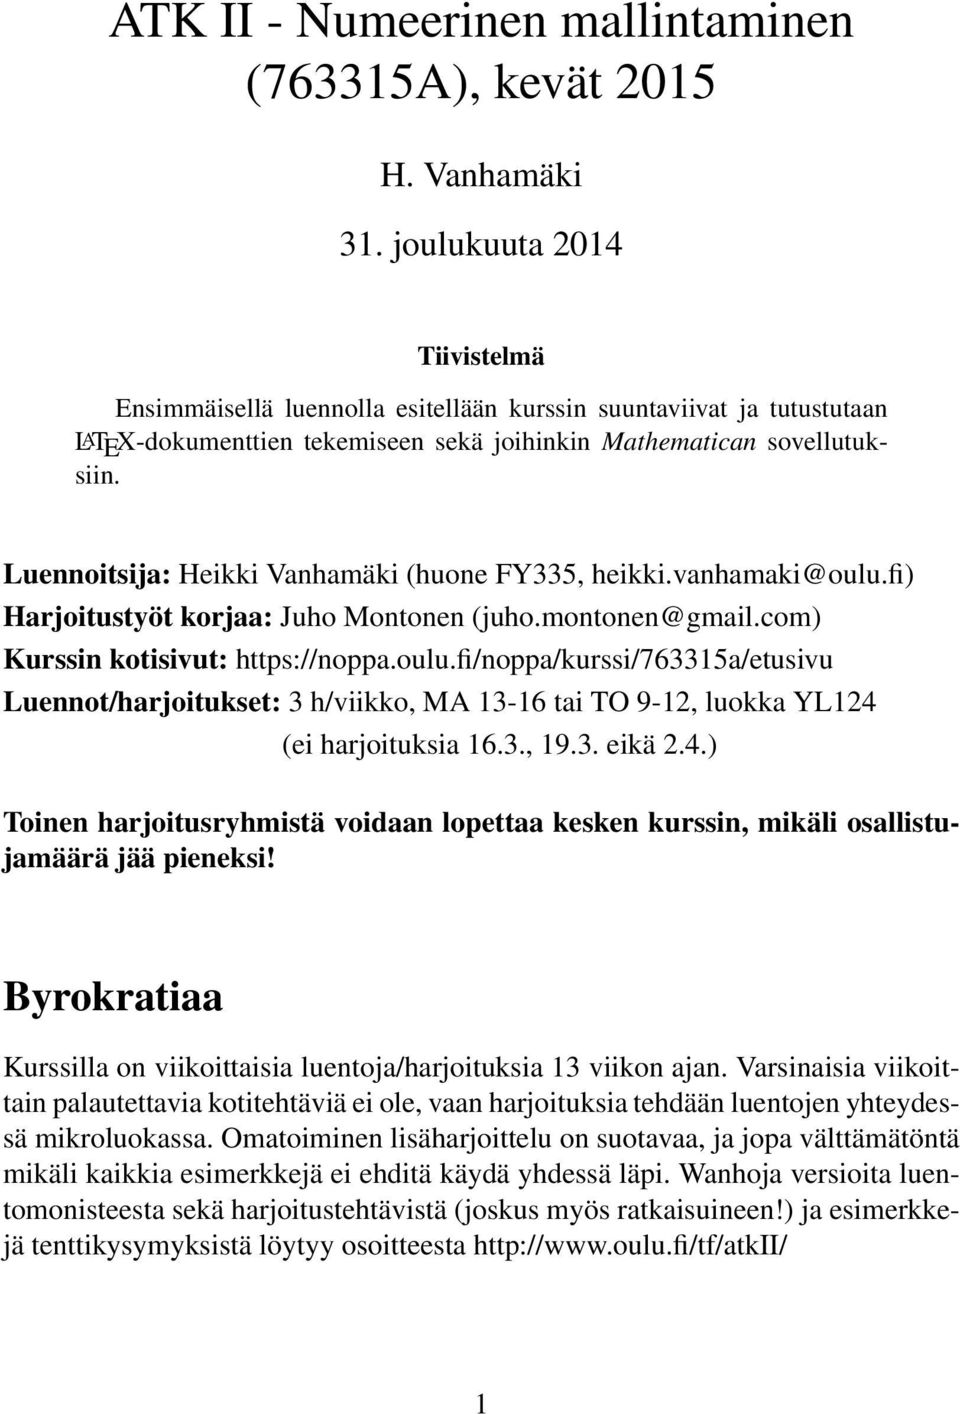 Luennoitsija: Heikki Vanhamäki (huone FY335, heikki.vanhamaki@oulu.fi) Harjoitustyöt korjaa: Juho Montonen (juho.montonen@gmail.com) Kurssin kotisivut: https://noppa.oulu.fi/noppa/kurssi/763315a/etusivu Luennot/harjoitukset: 3 h/viikko, MA 13-16 tai TO 9-12, luokka YL124 (ei harjoituksia 16.